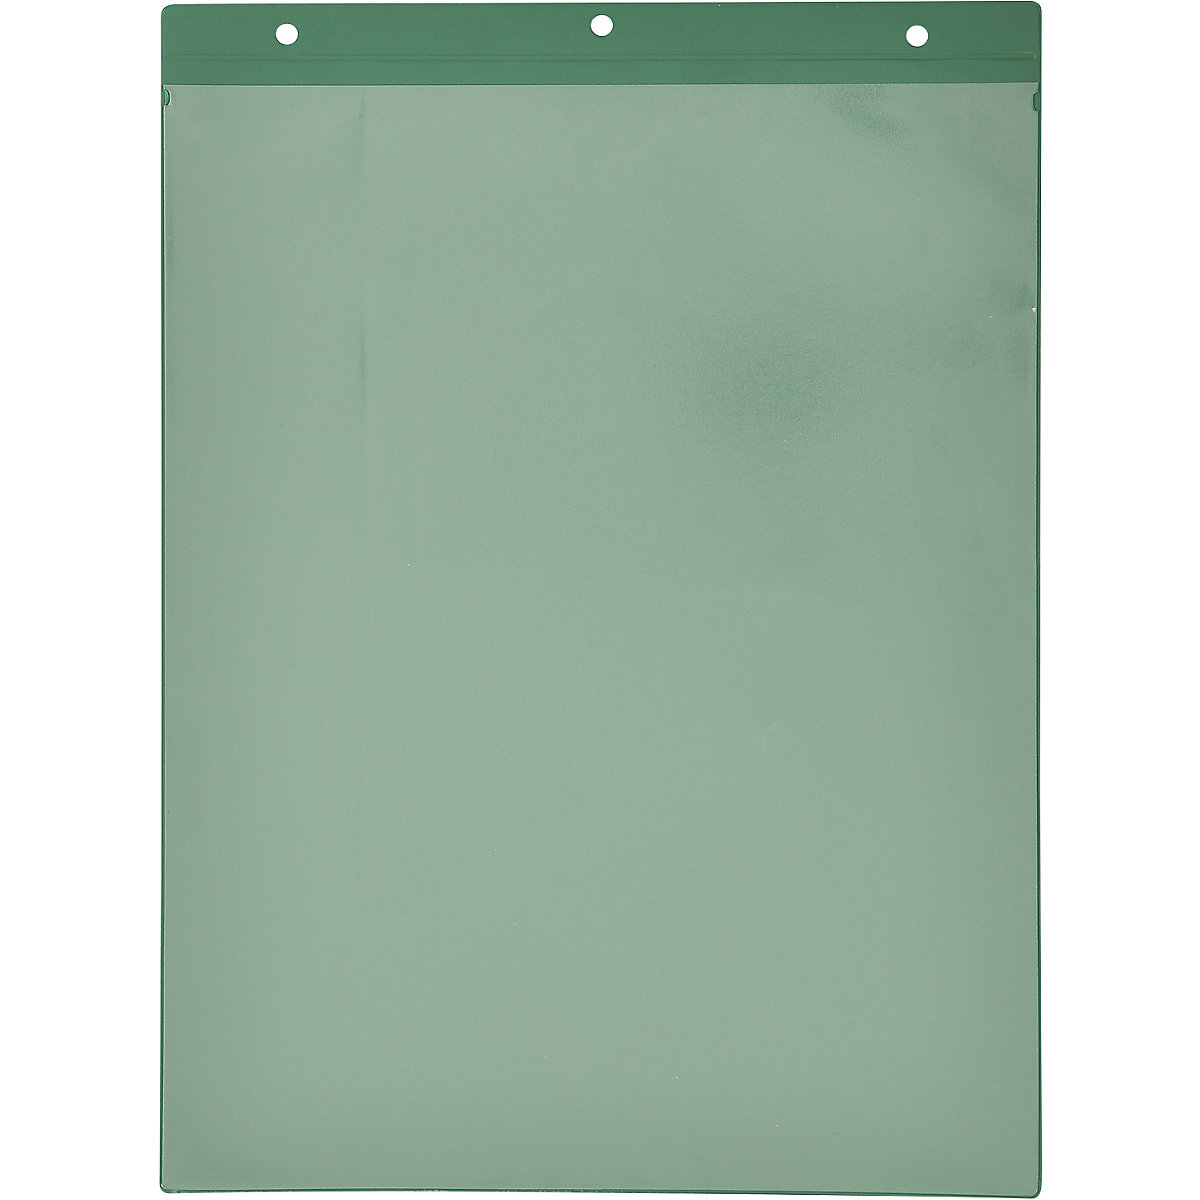 Džepovi za natpise s rupama za vješanje, uspravni format DIN A4, u zelenoj boji, pak. 50 kom., od 2 pak.-1